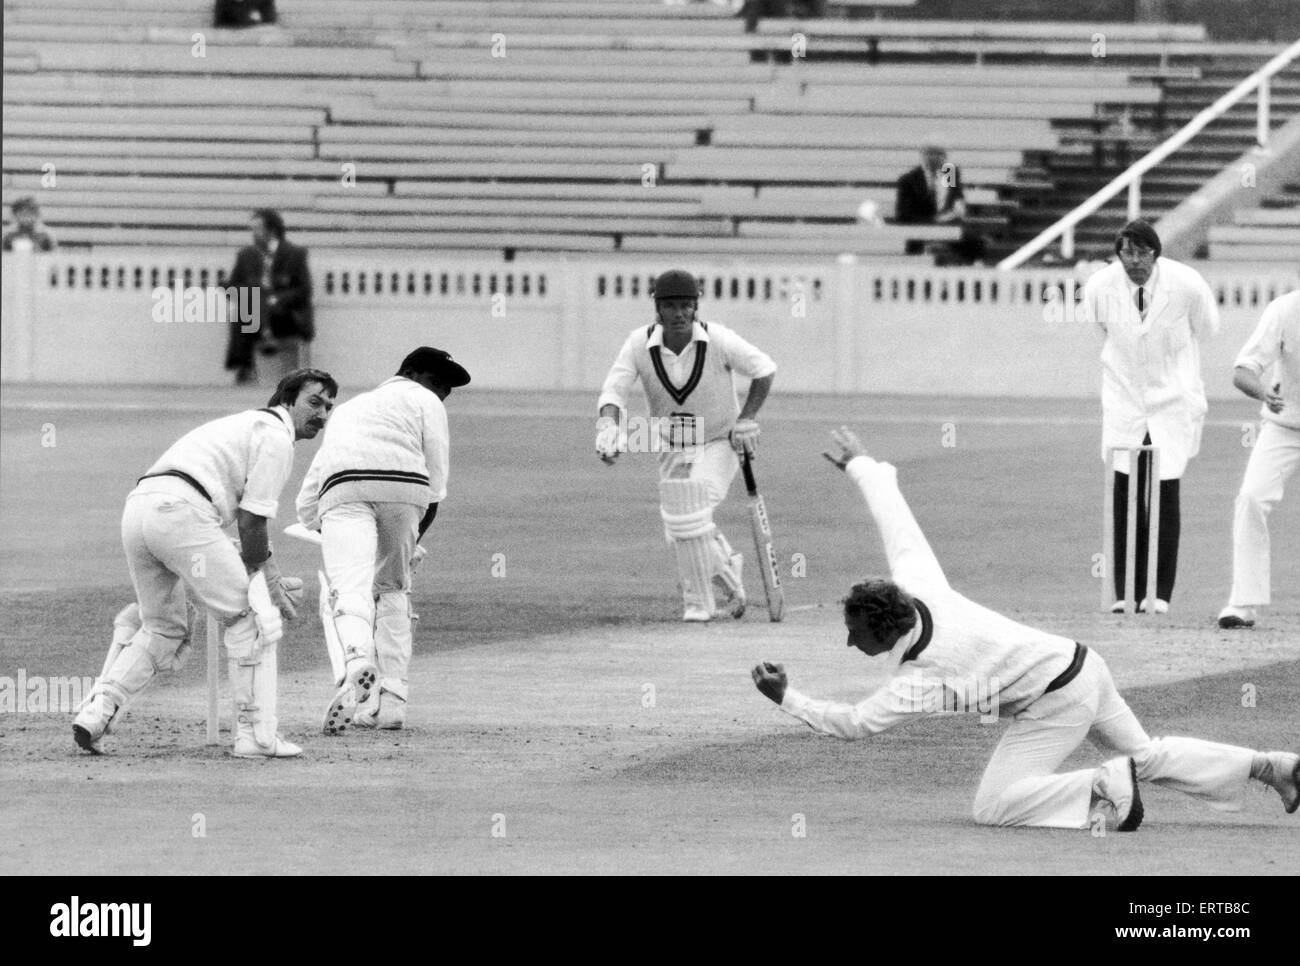 Lancashire Cricket Club V Middlesex, Lloyd rende la cattura. Il 22 giugno 1979. Foto Stock